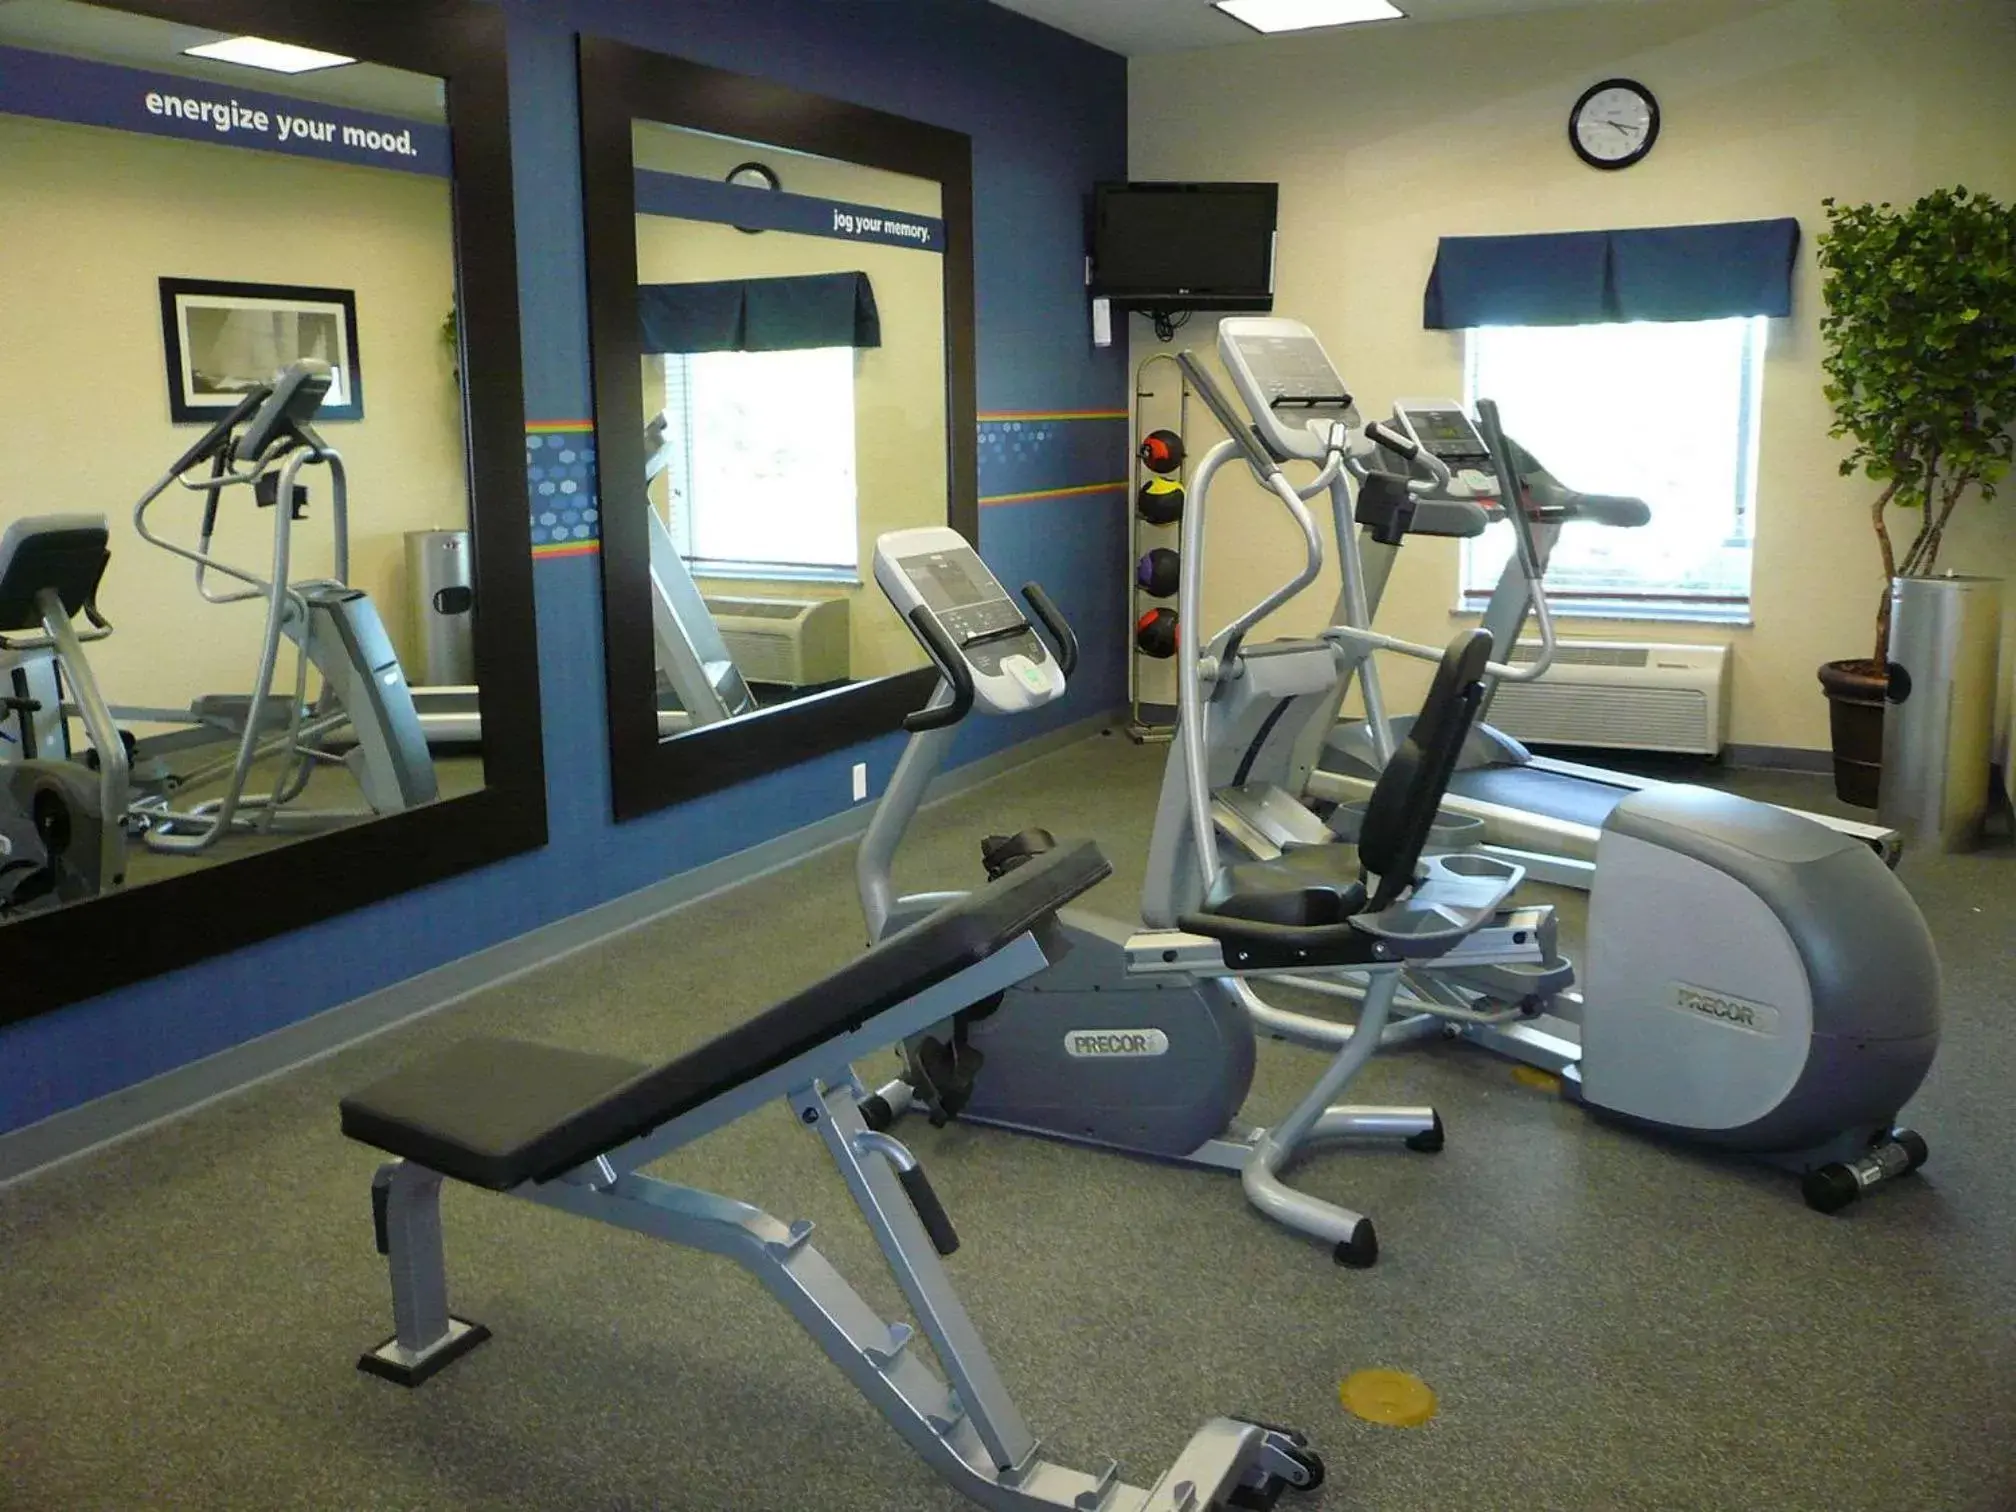 Fitness centre/facilities, Fitness Center/Facilities in Hampton Inn Dallas-Rockwall